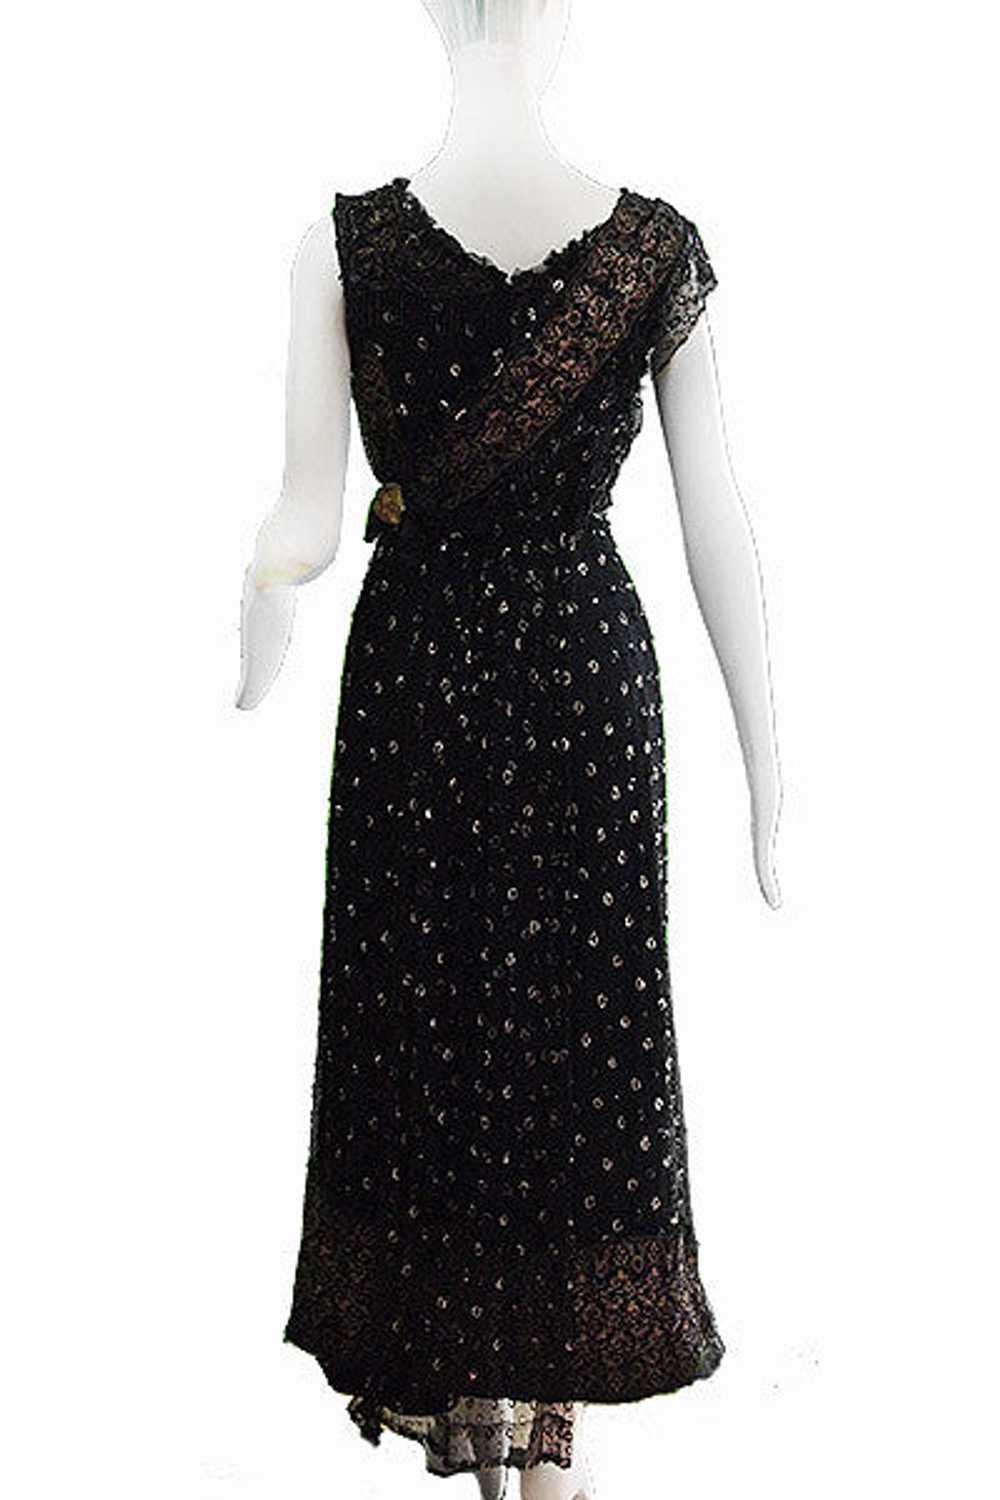 1910s Edwardian Tulle & Gilt Lace Evening Dress - image 2